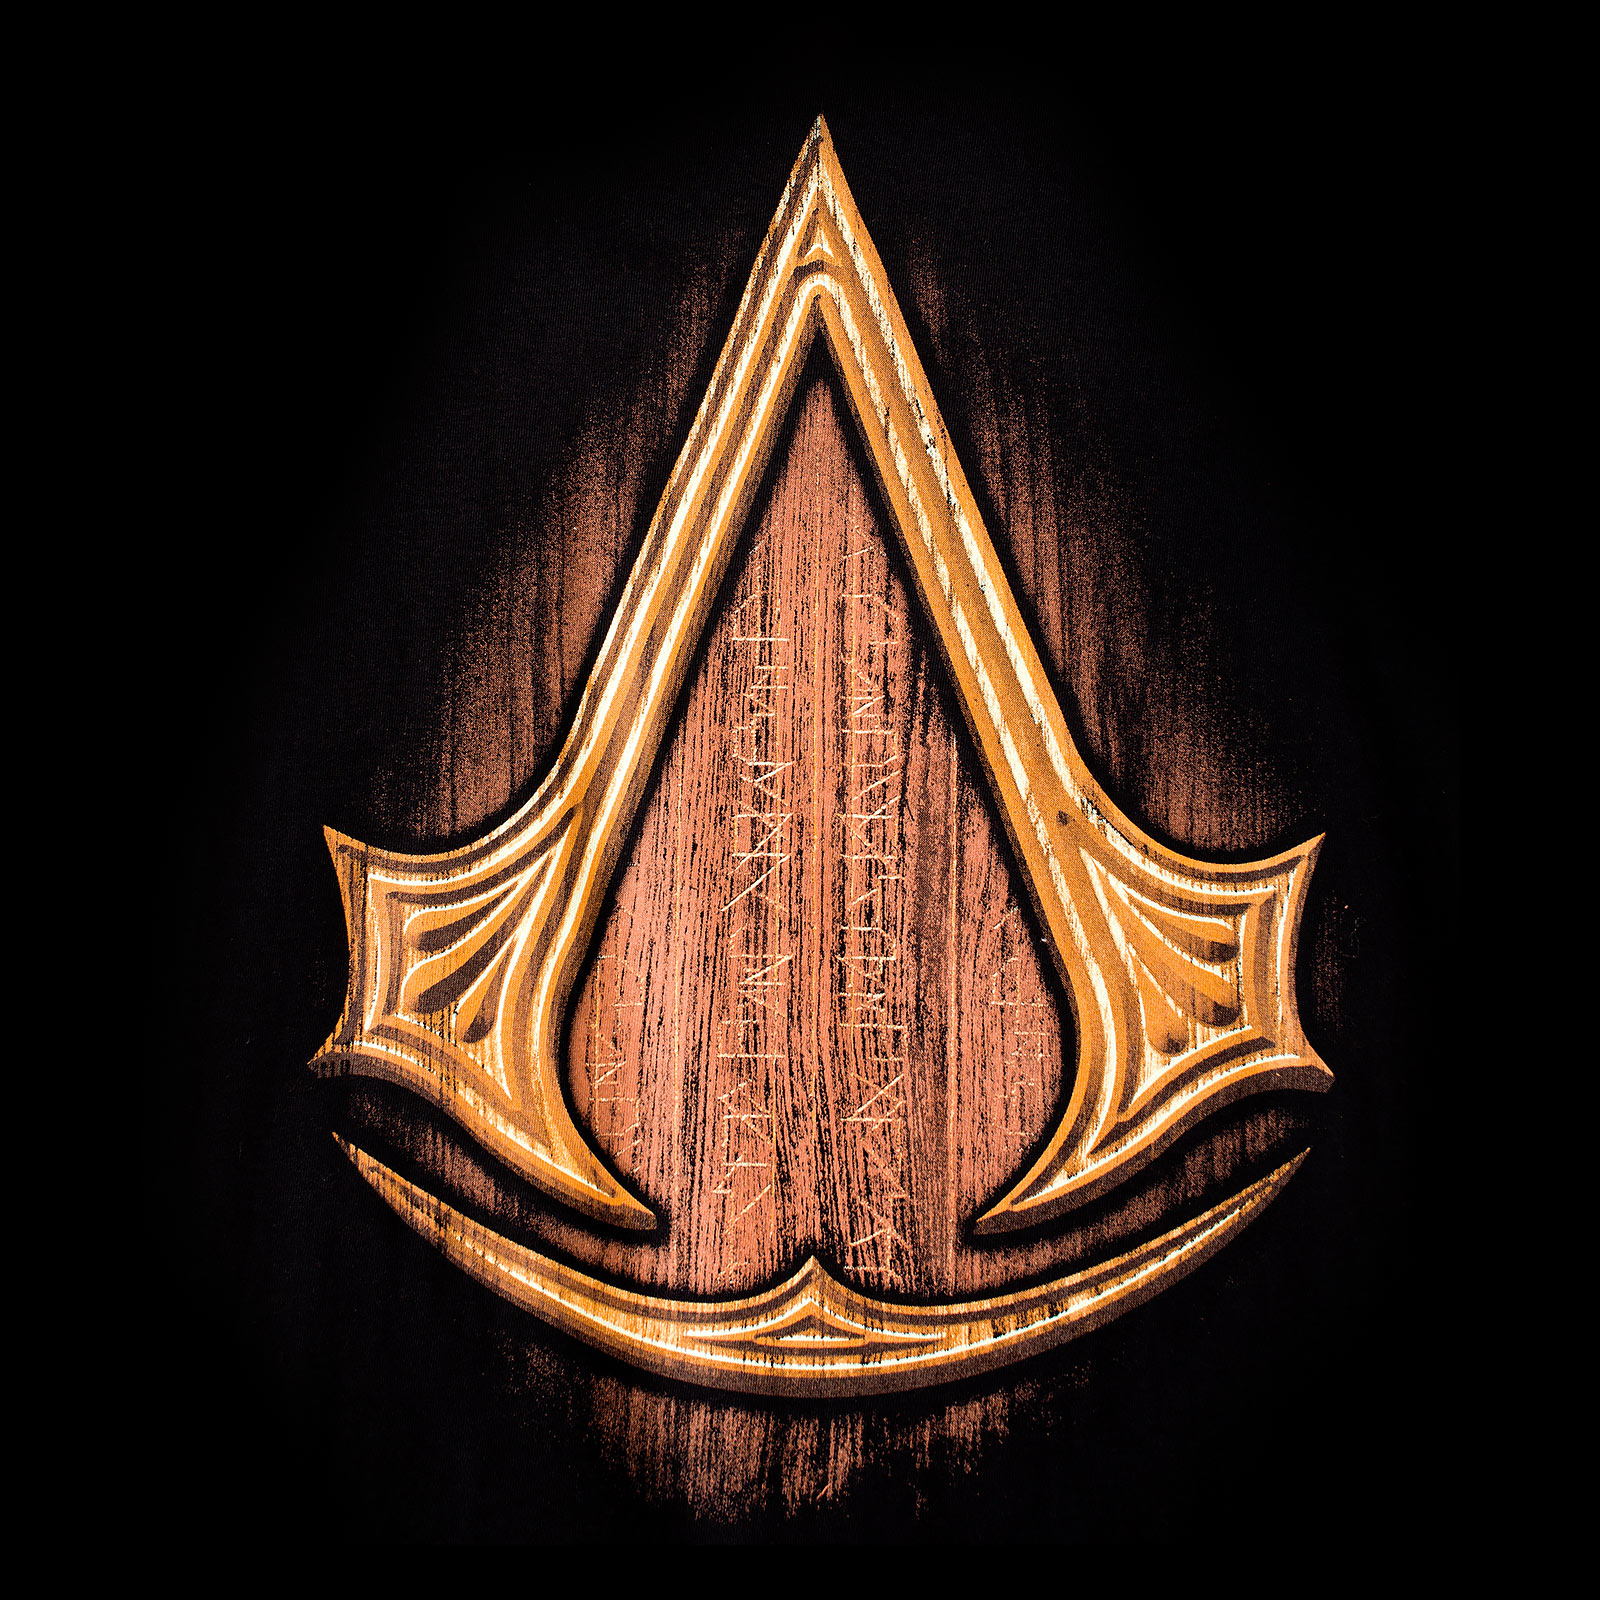 Assassins Creed - T-Shirt Insignia Wood noir